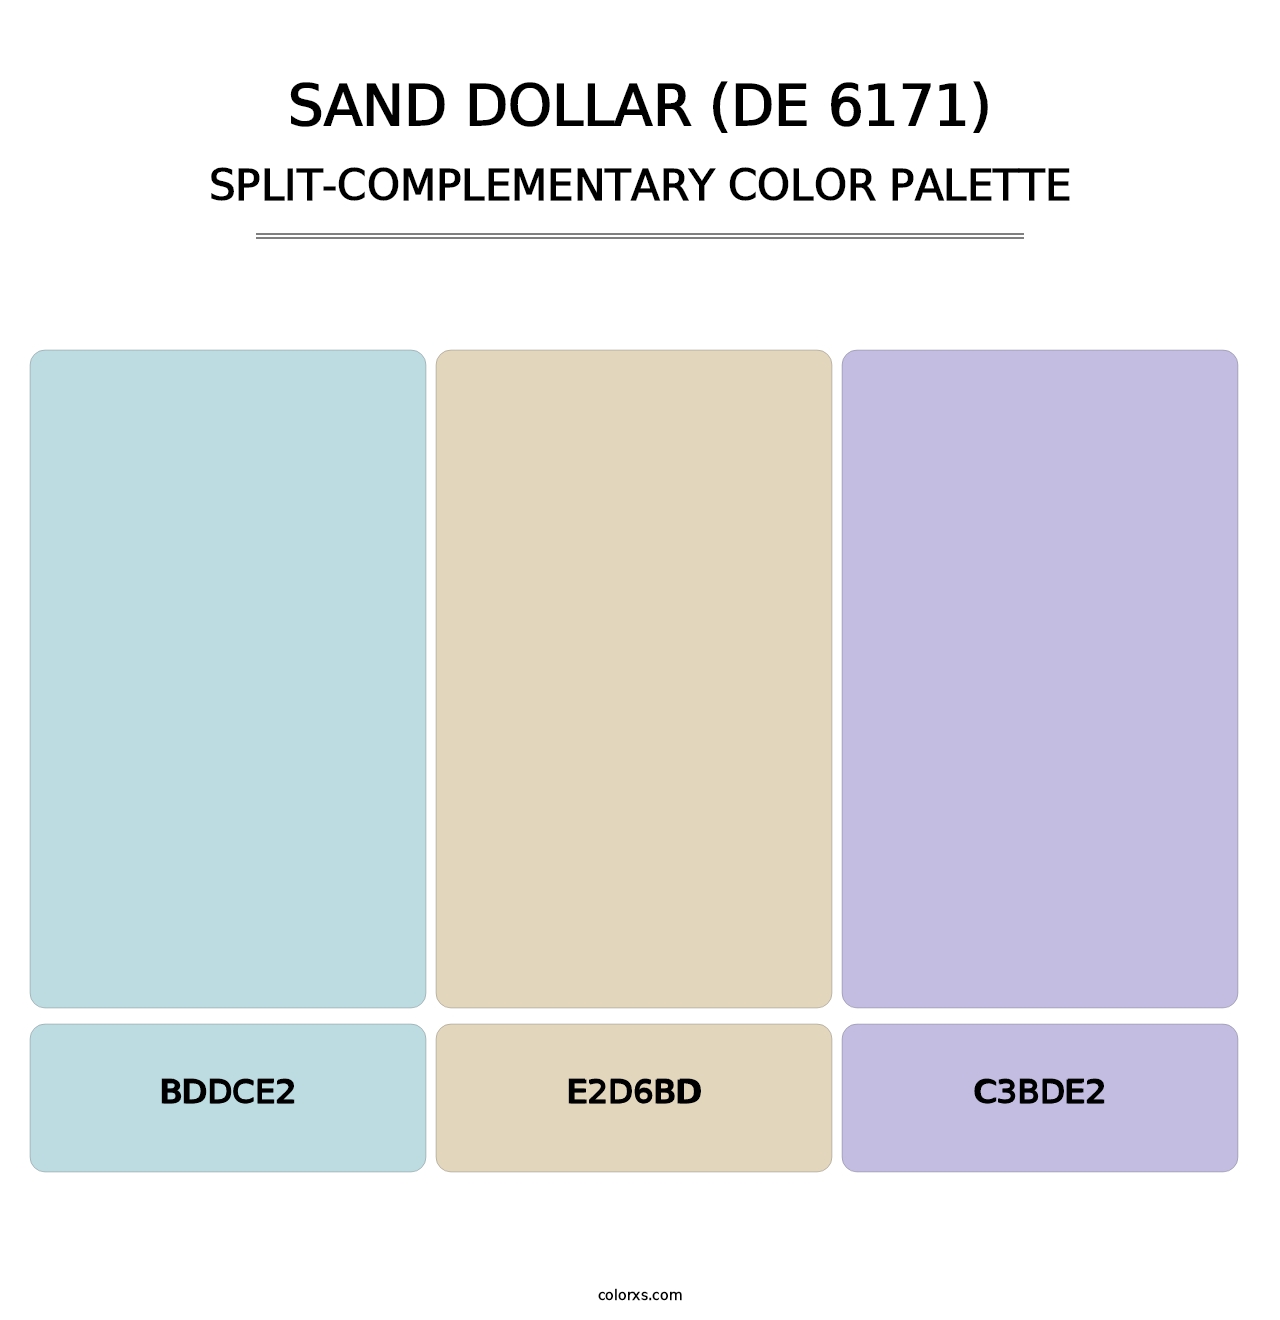 Sand Dollar (DE 6171) - Split-Complementary Color Palette